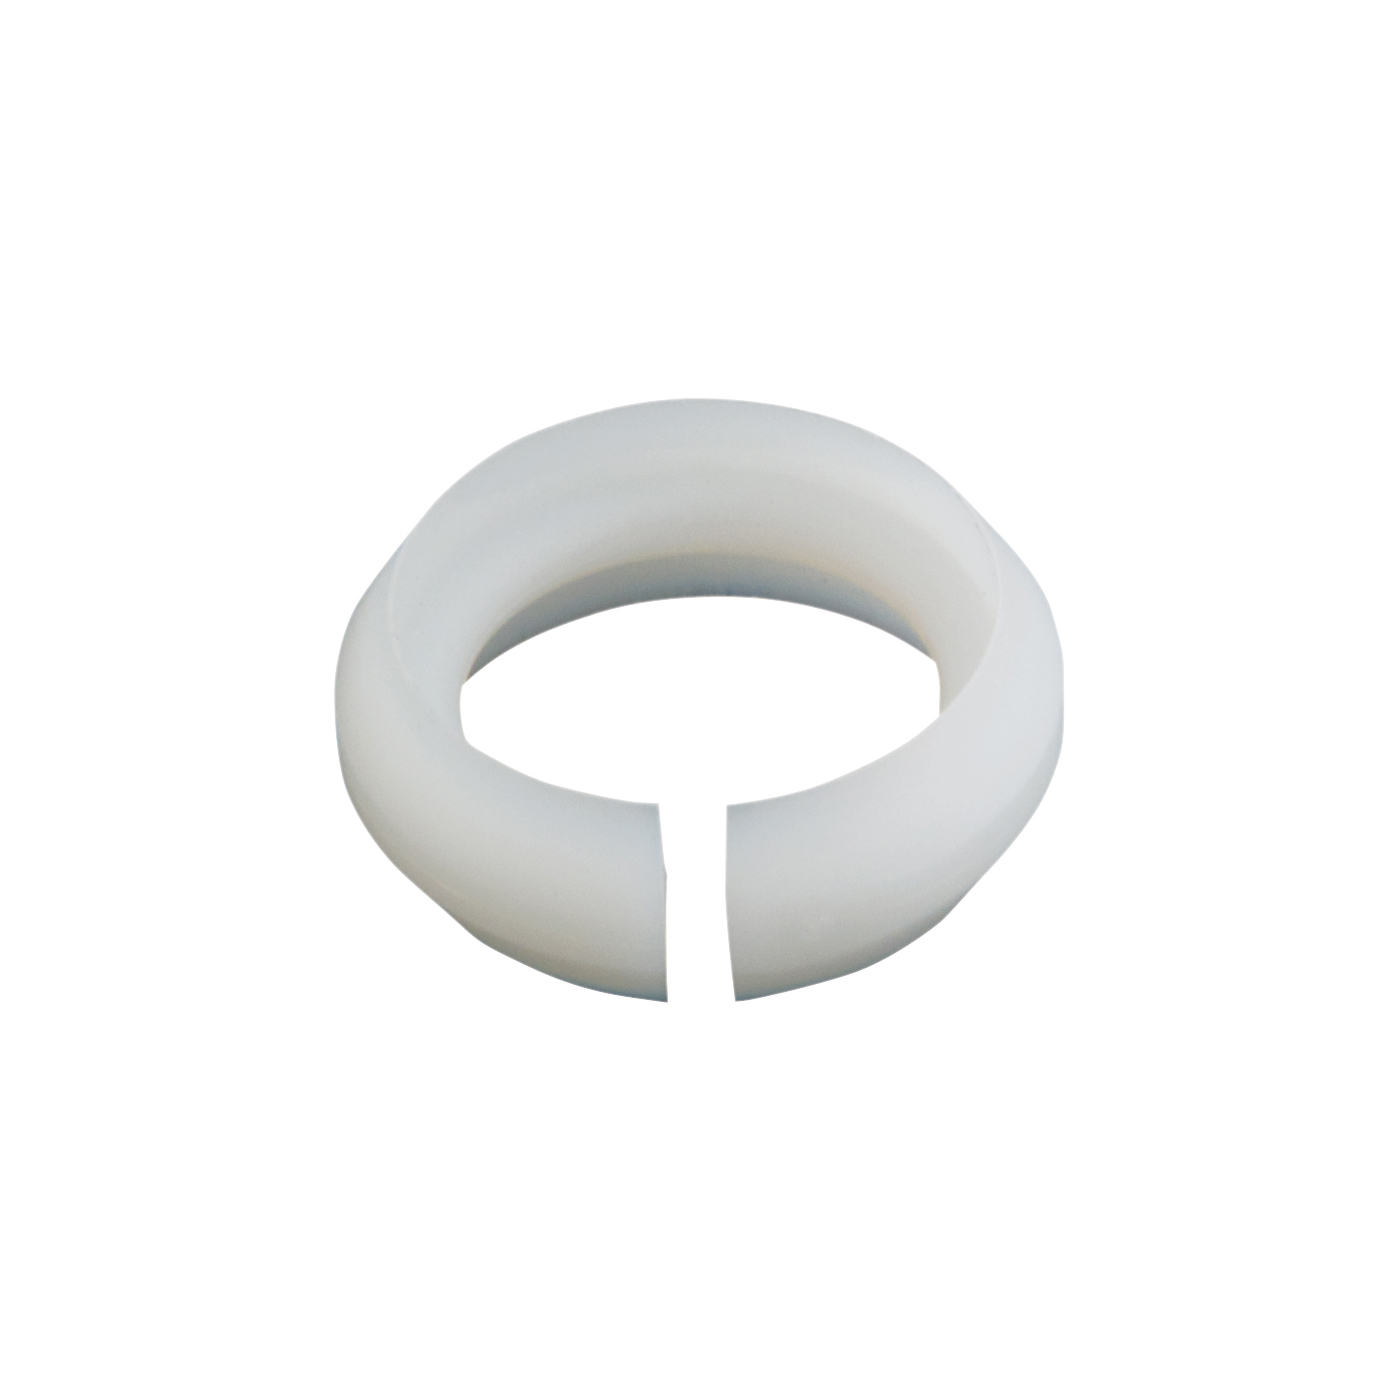 Waltec® nylon split ring - Master Plumber®